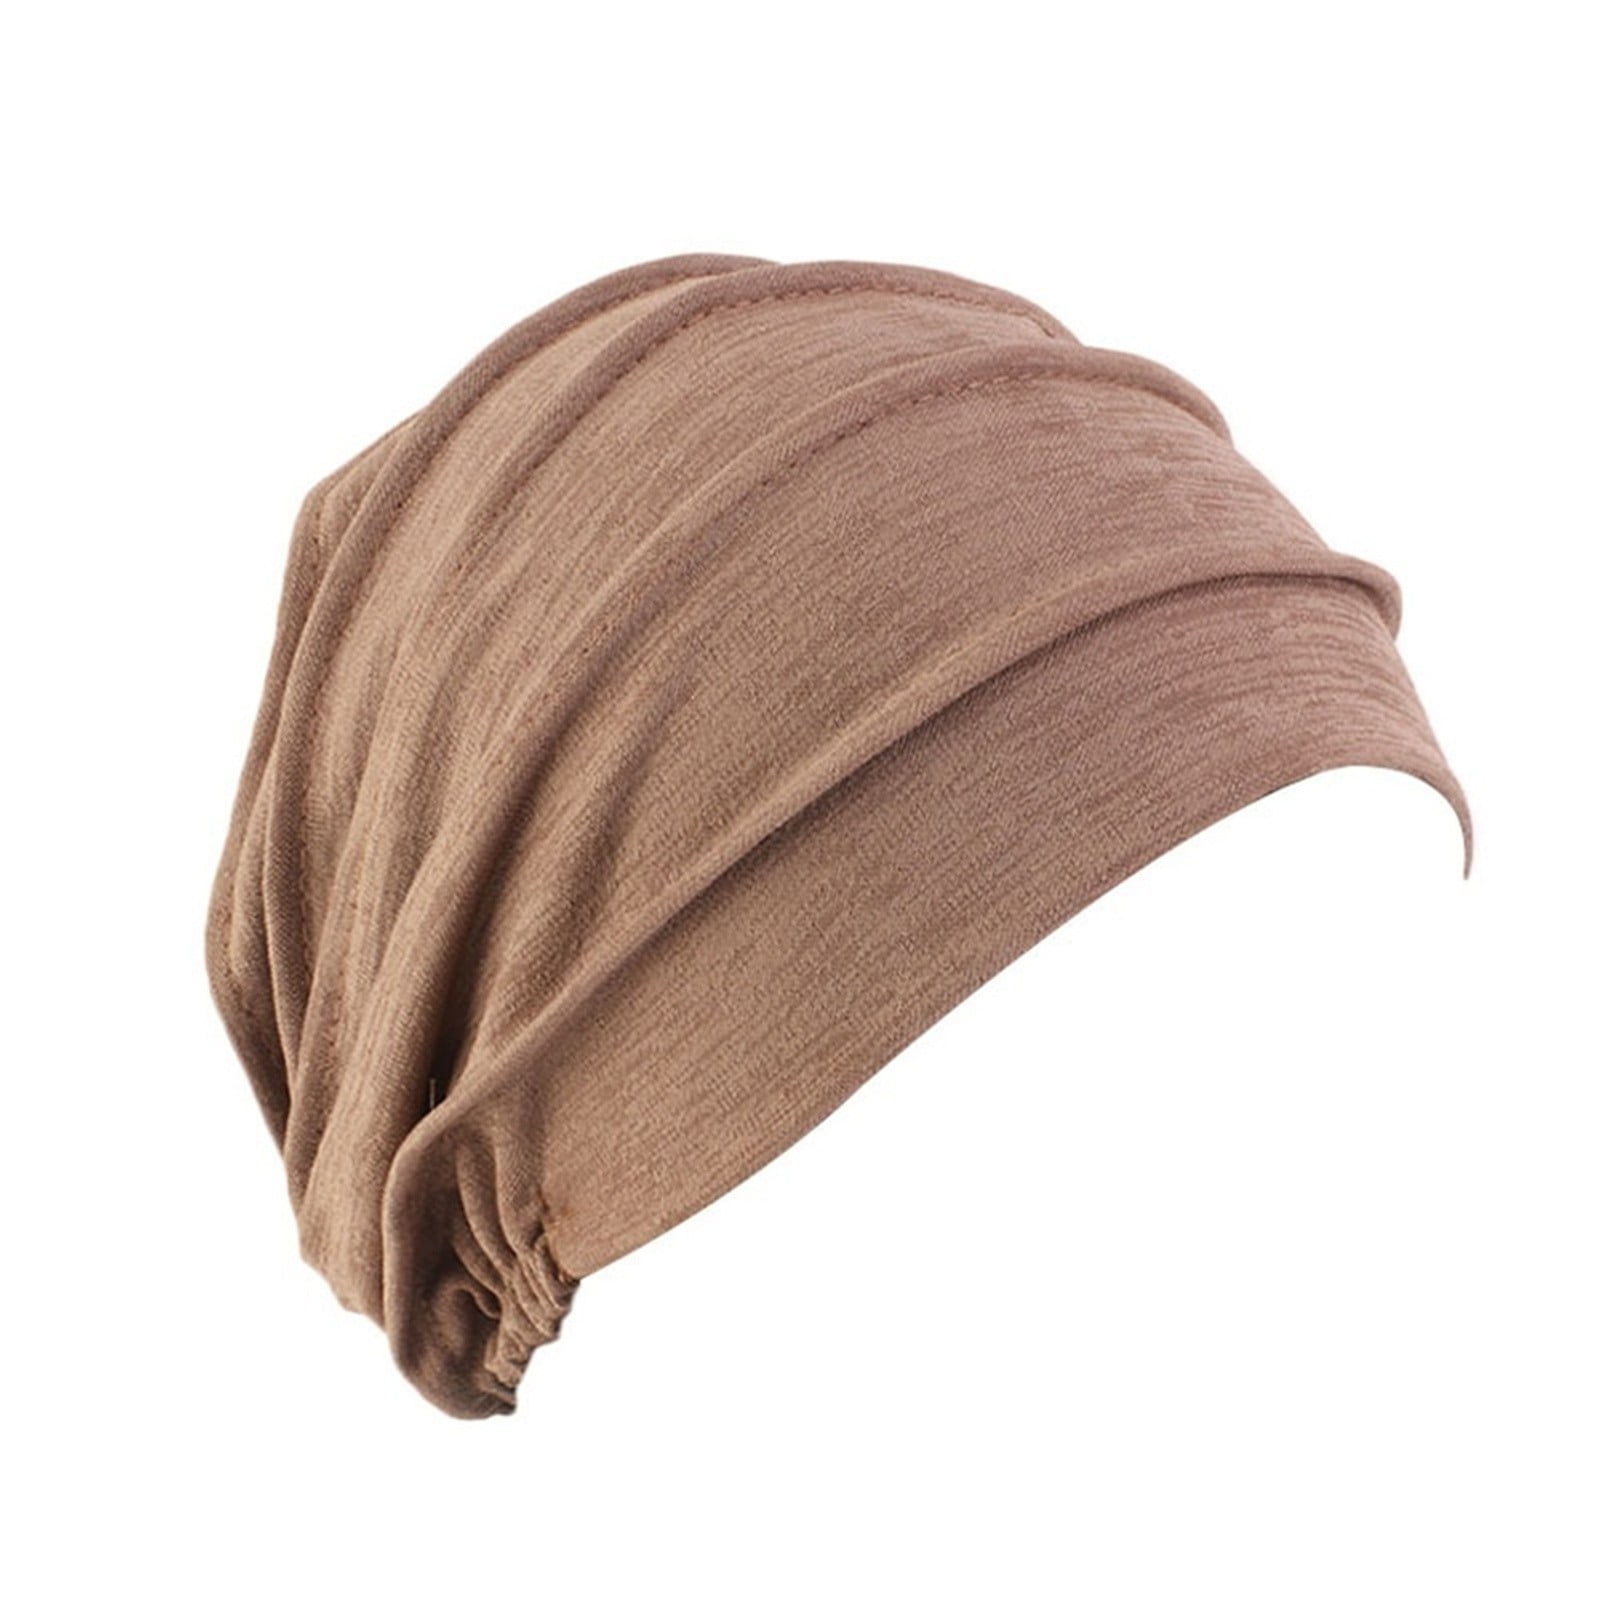 HHei_K Women's Cotton Breathe Hijabs Turban Elastic Head Wrap